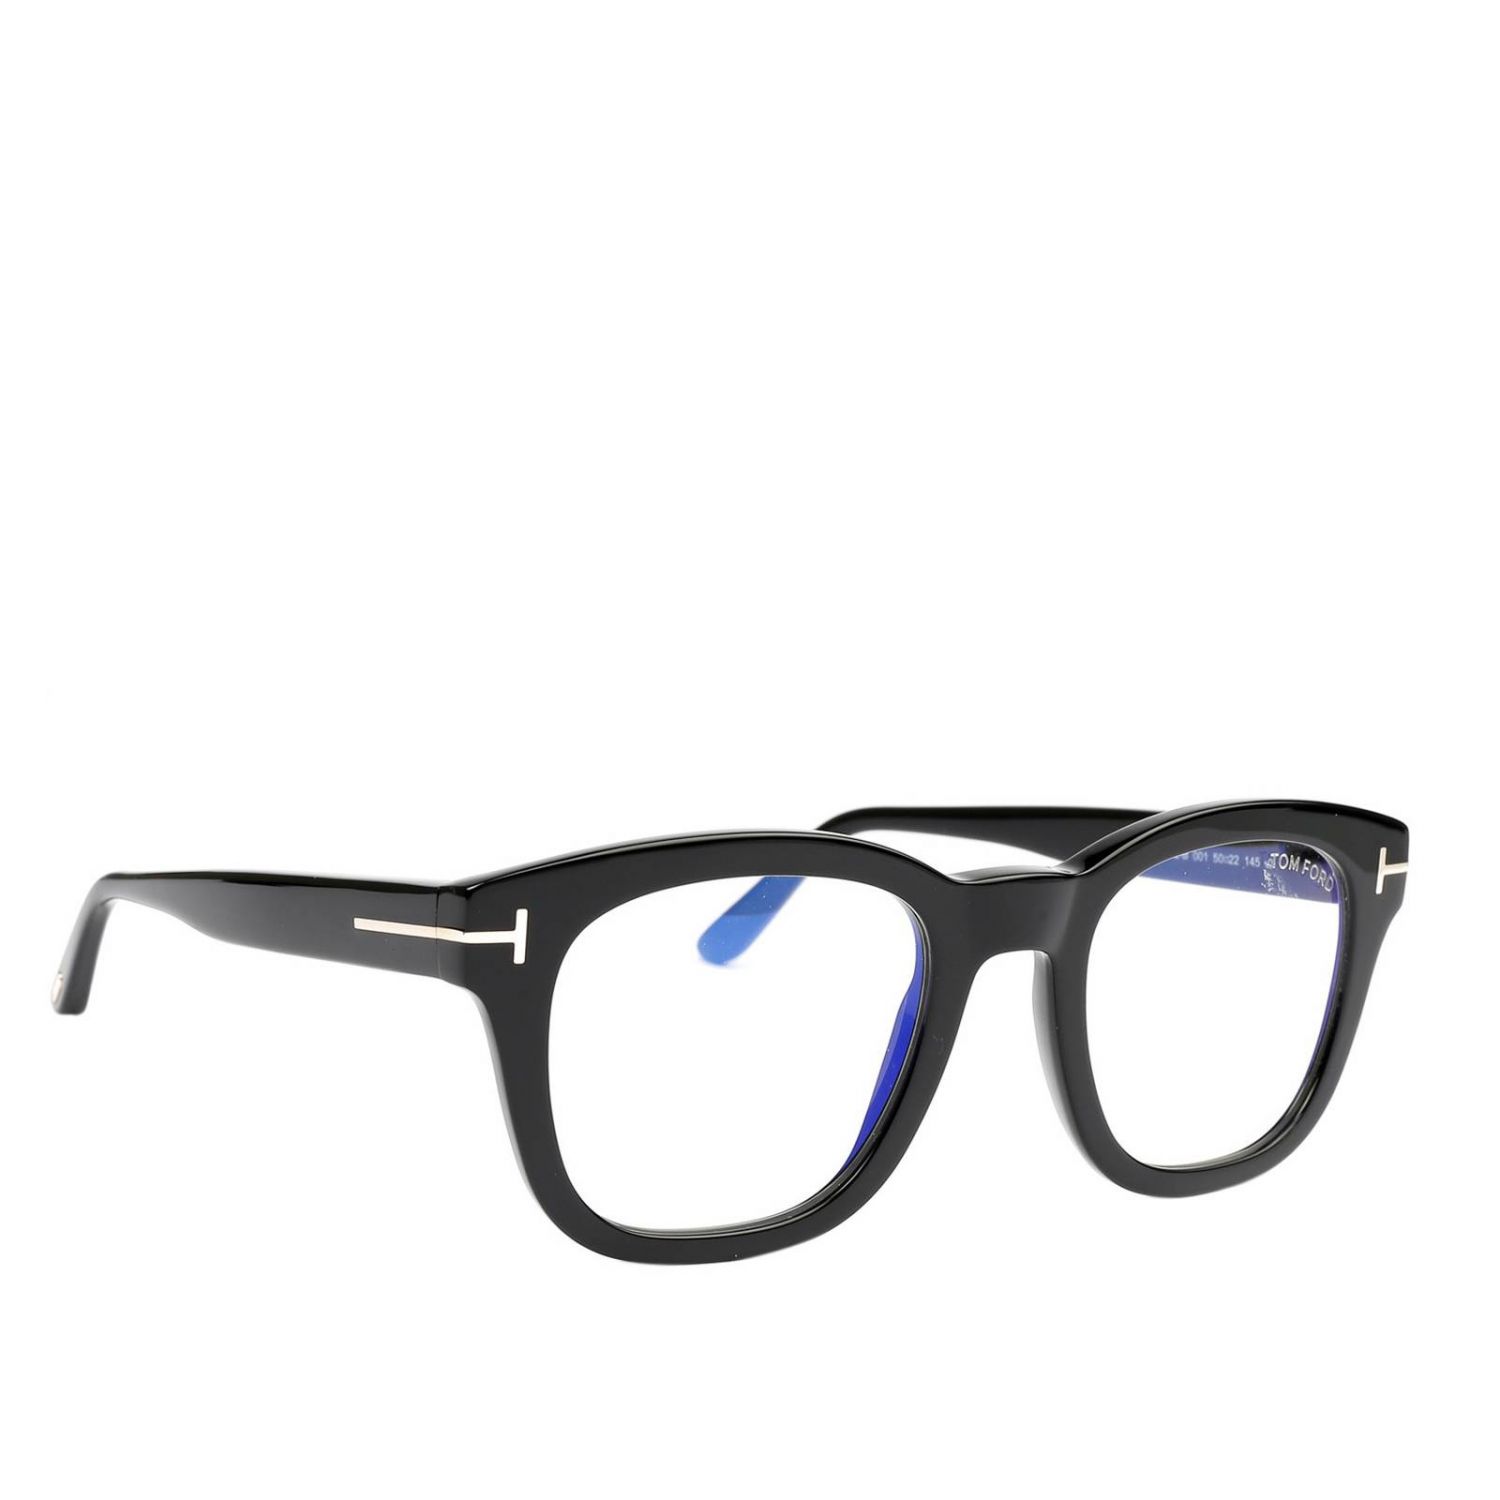 Tom Ford Outlet: Glasses men | Glasses Tom Ford Men Black | Glasses Tom ...